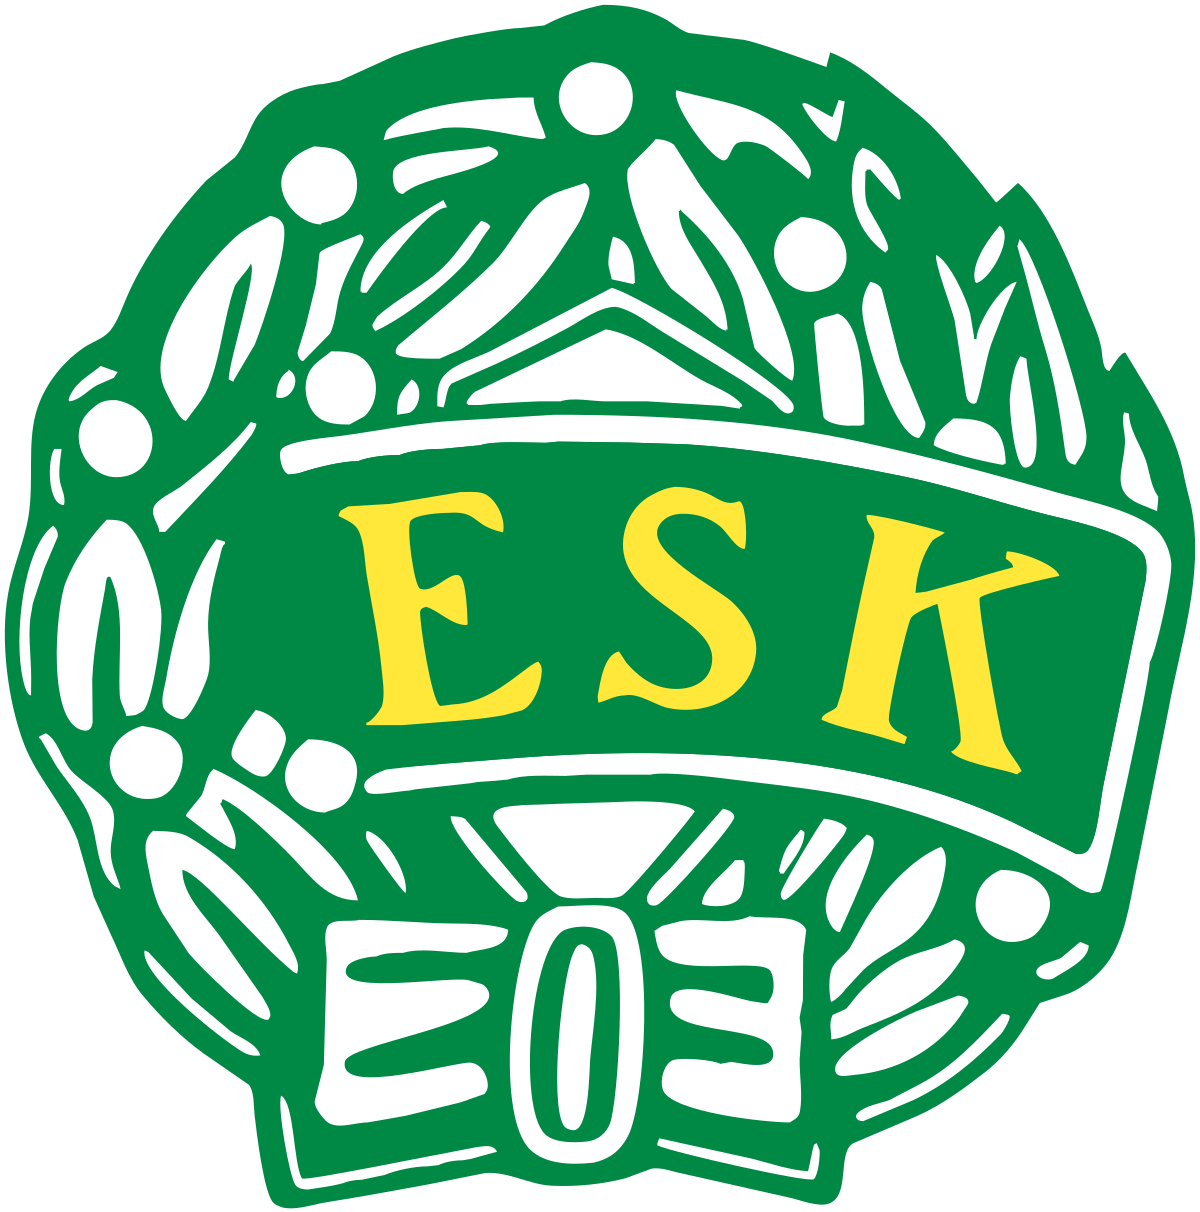 Enköpings SK FK